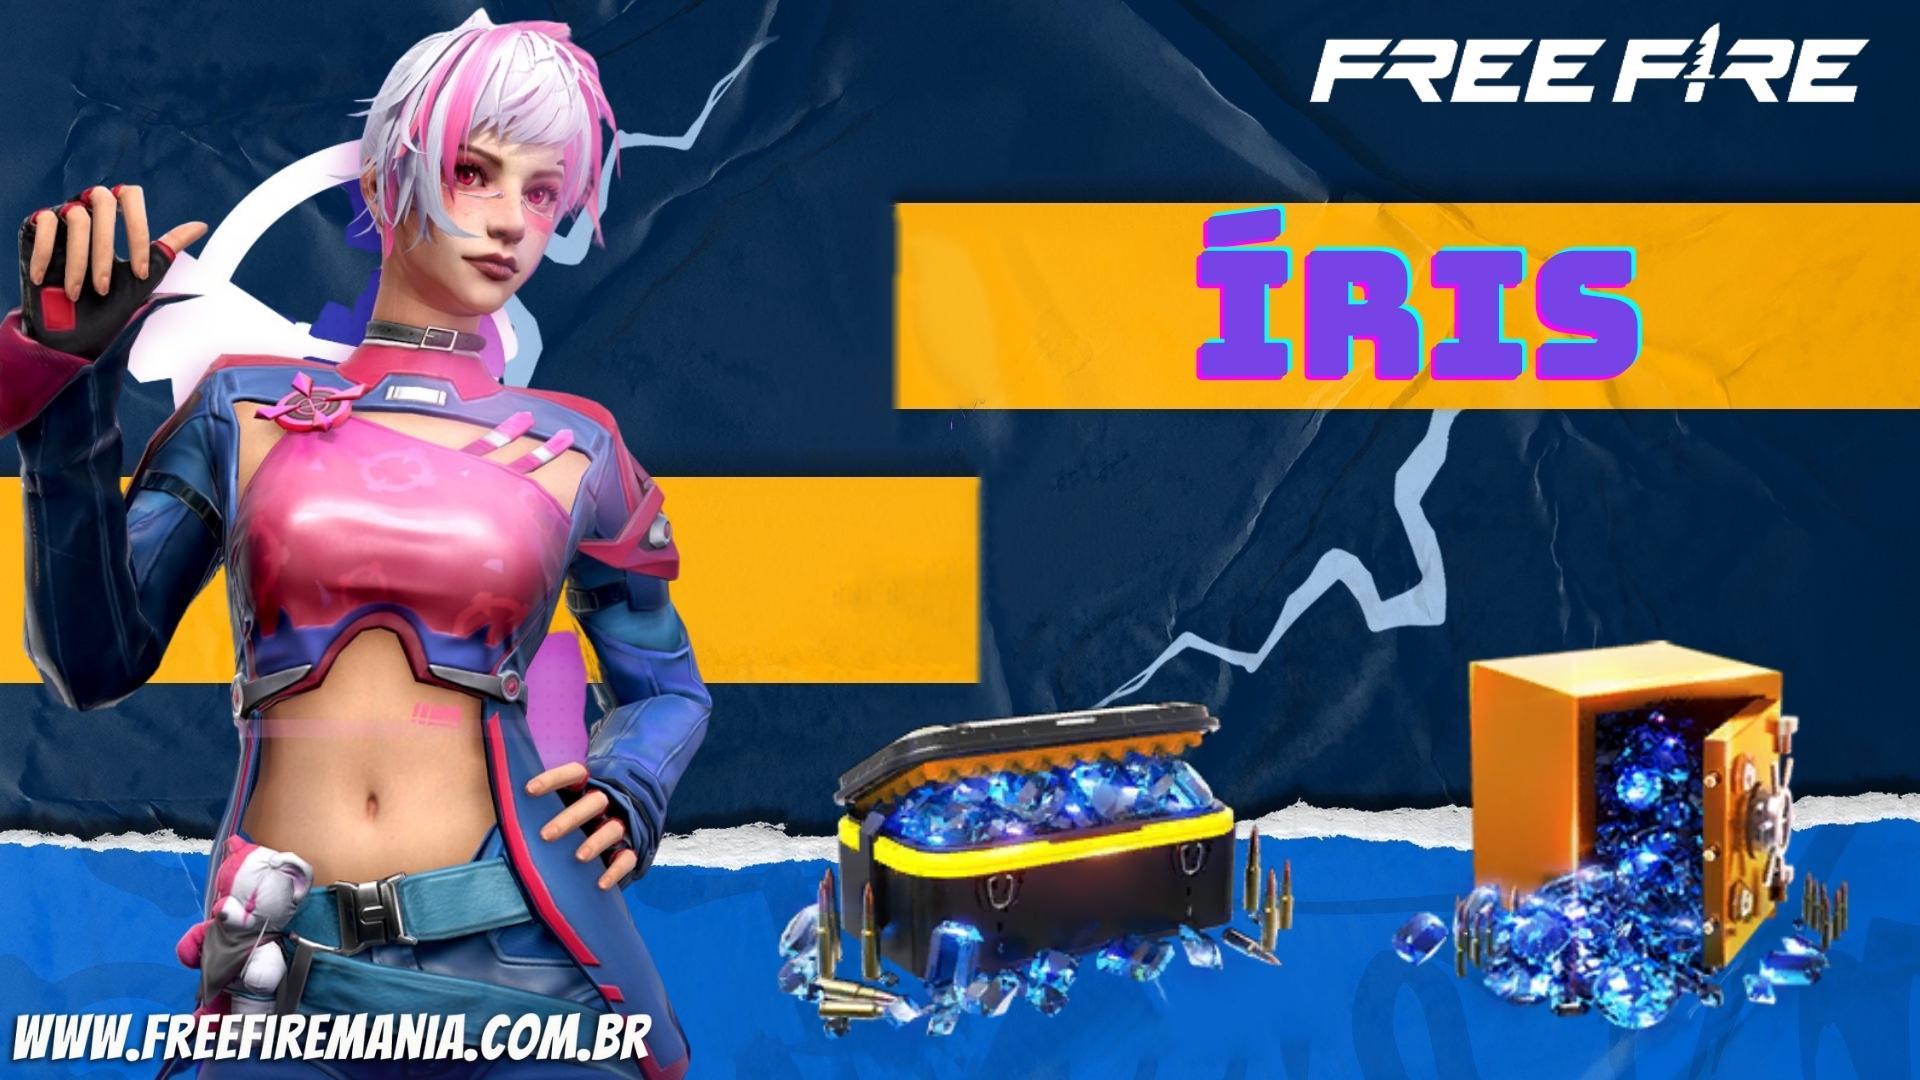 Free Fire traz nova personagem Íris em evento de recarga FF